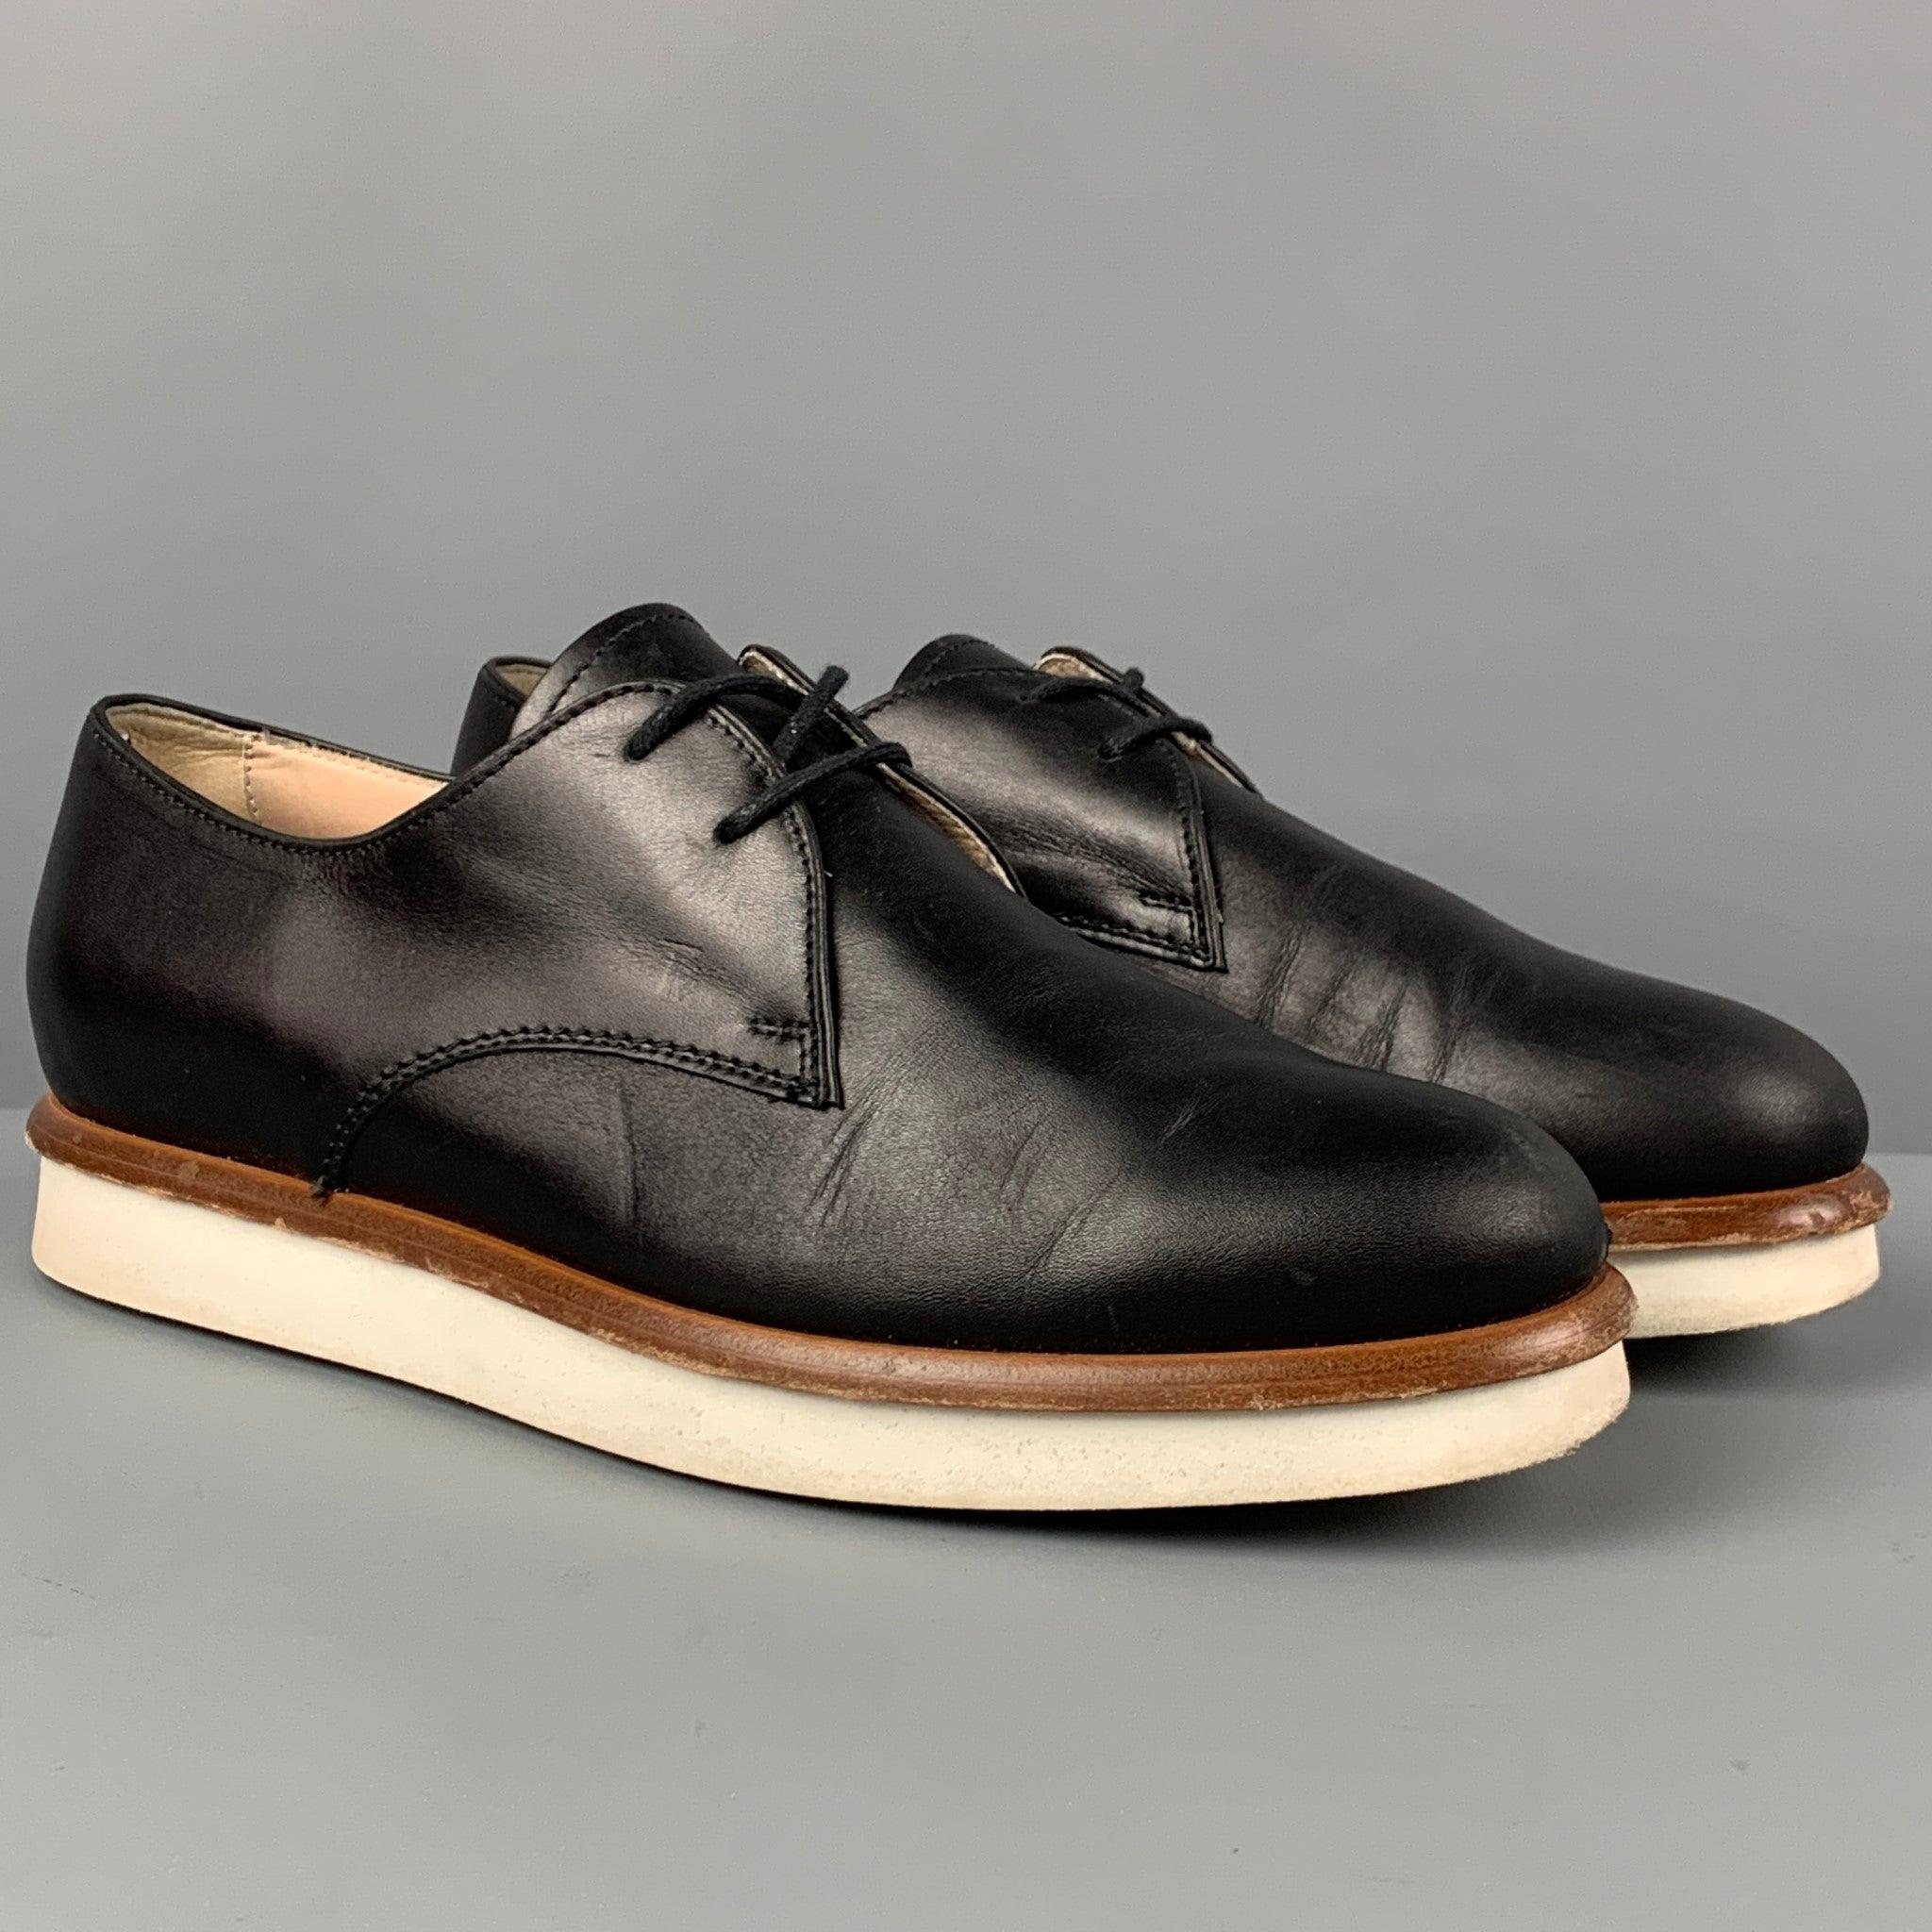 Les chaussures TOD'S sont en cuir noir et présentent une bordure en bois, une semelle en caoutchouc et une fermeture à lacets. Fabriquées en Italie.
Très bien
Etat d'occasion. 

Marqué :   36.5Semelle : 10 pouces  x 3,25 pouces 
  
  
 
Référence :